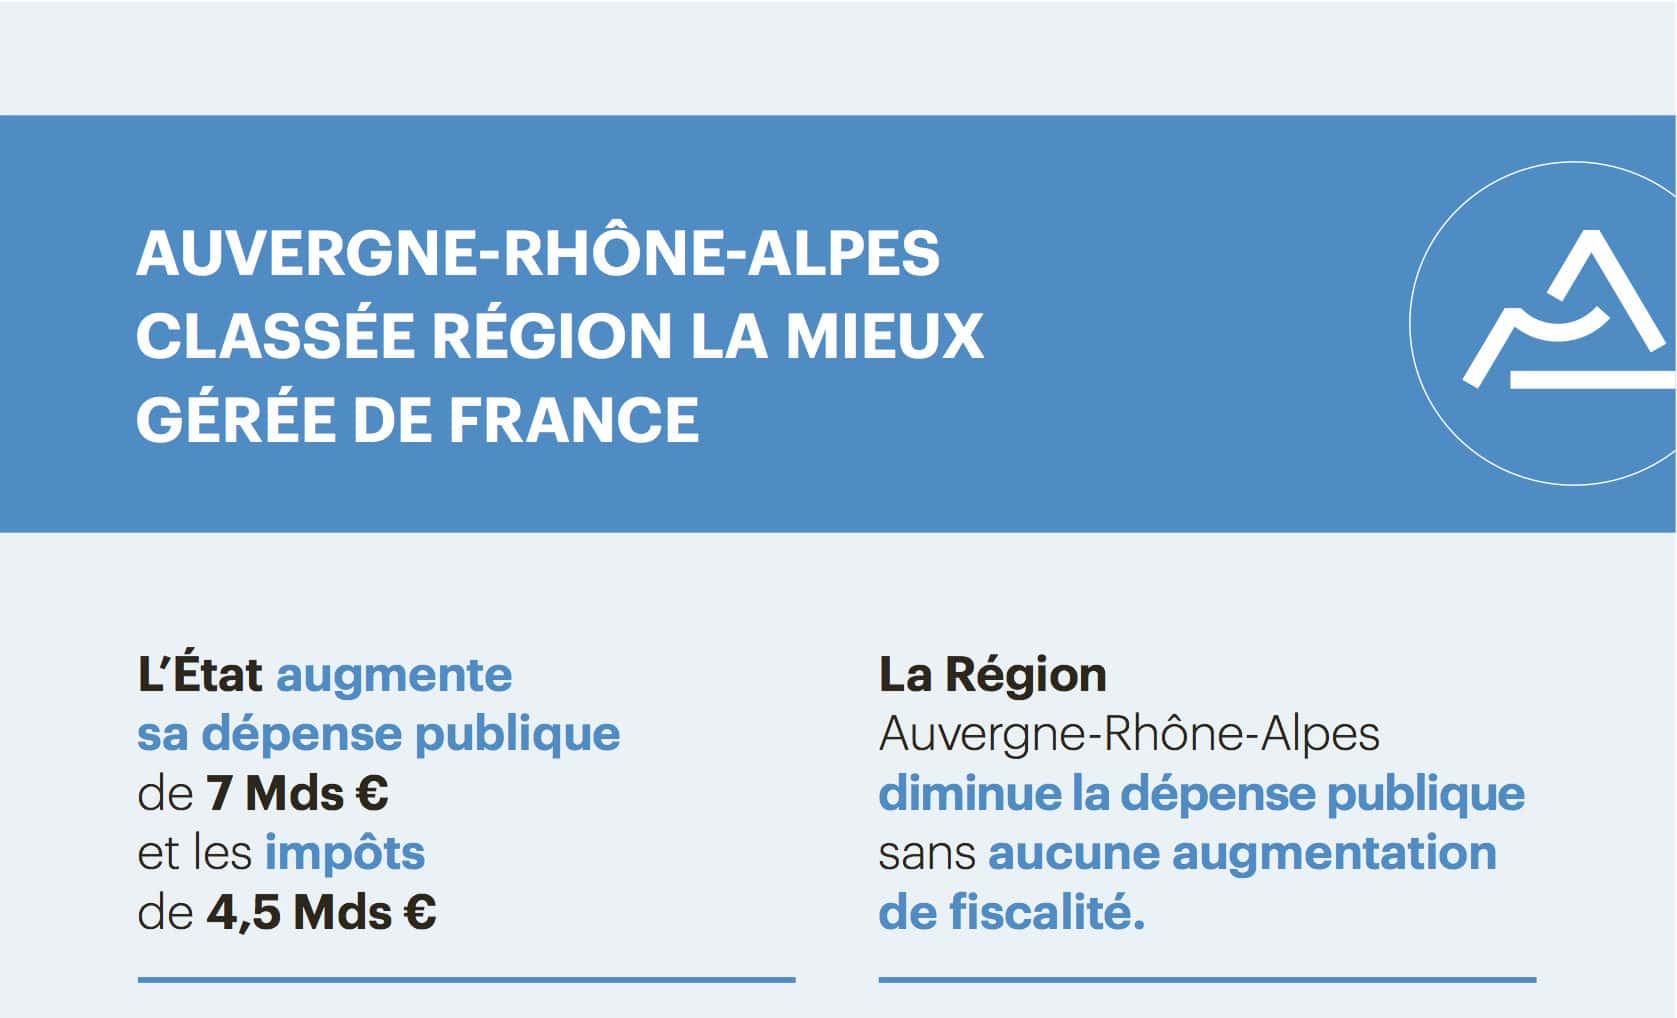 Les pubs de la région Auvergne-Rhône-Alpes pour le futur candidat Wauquiez